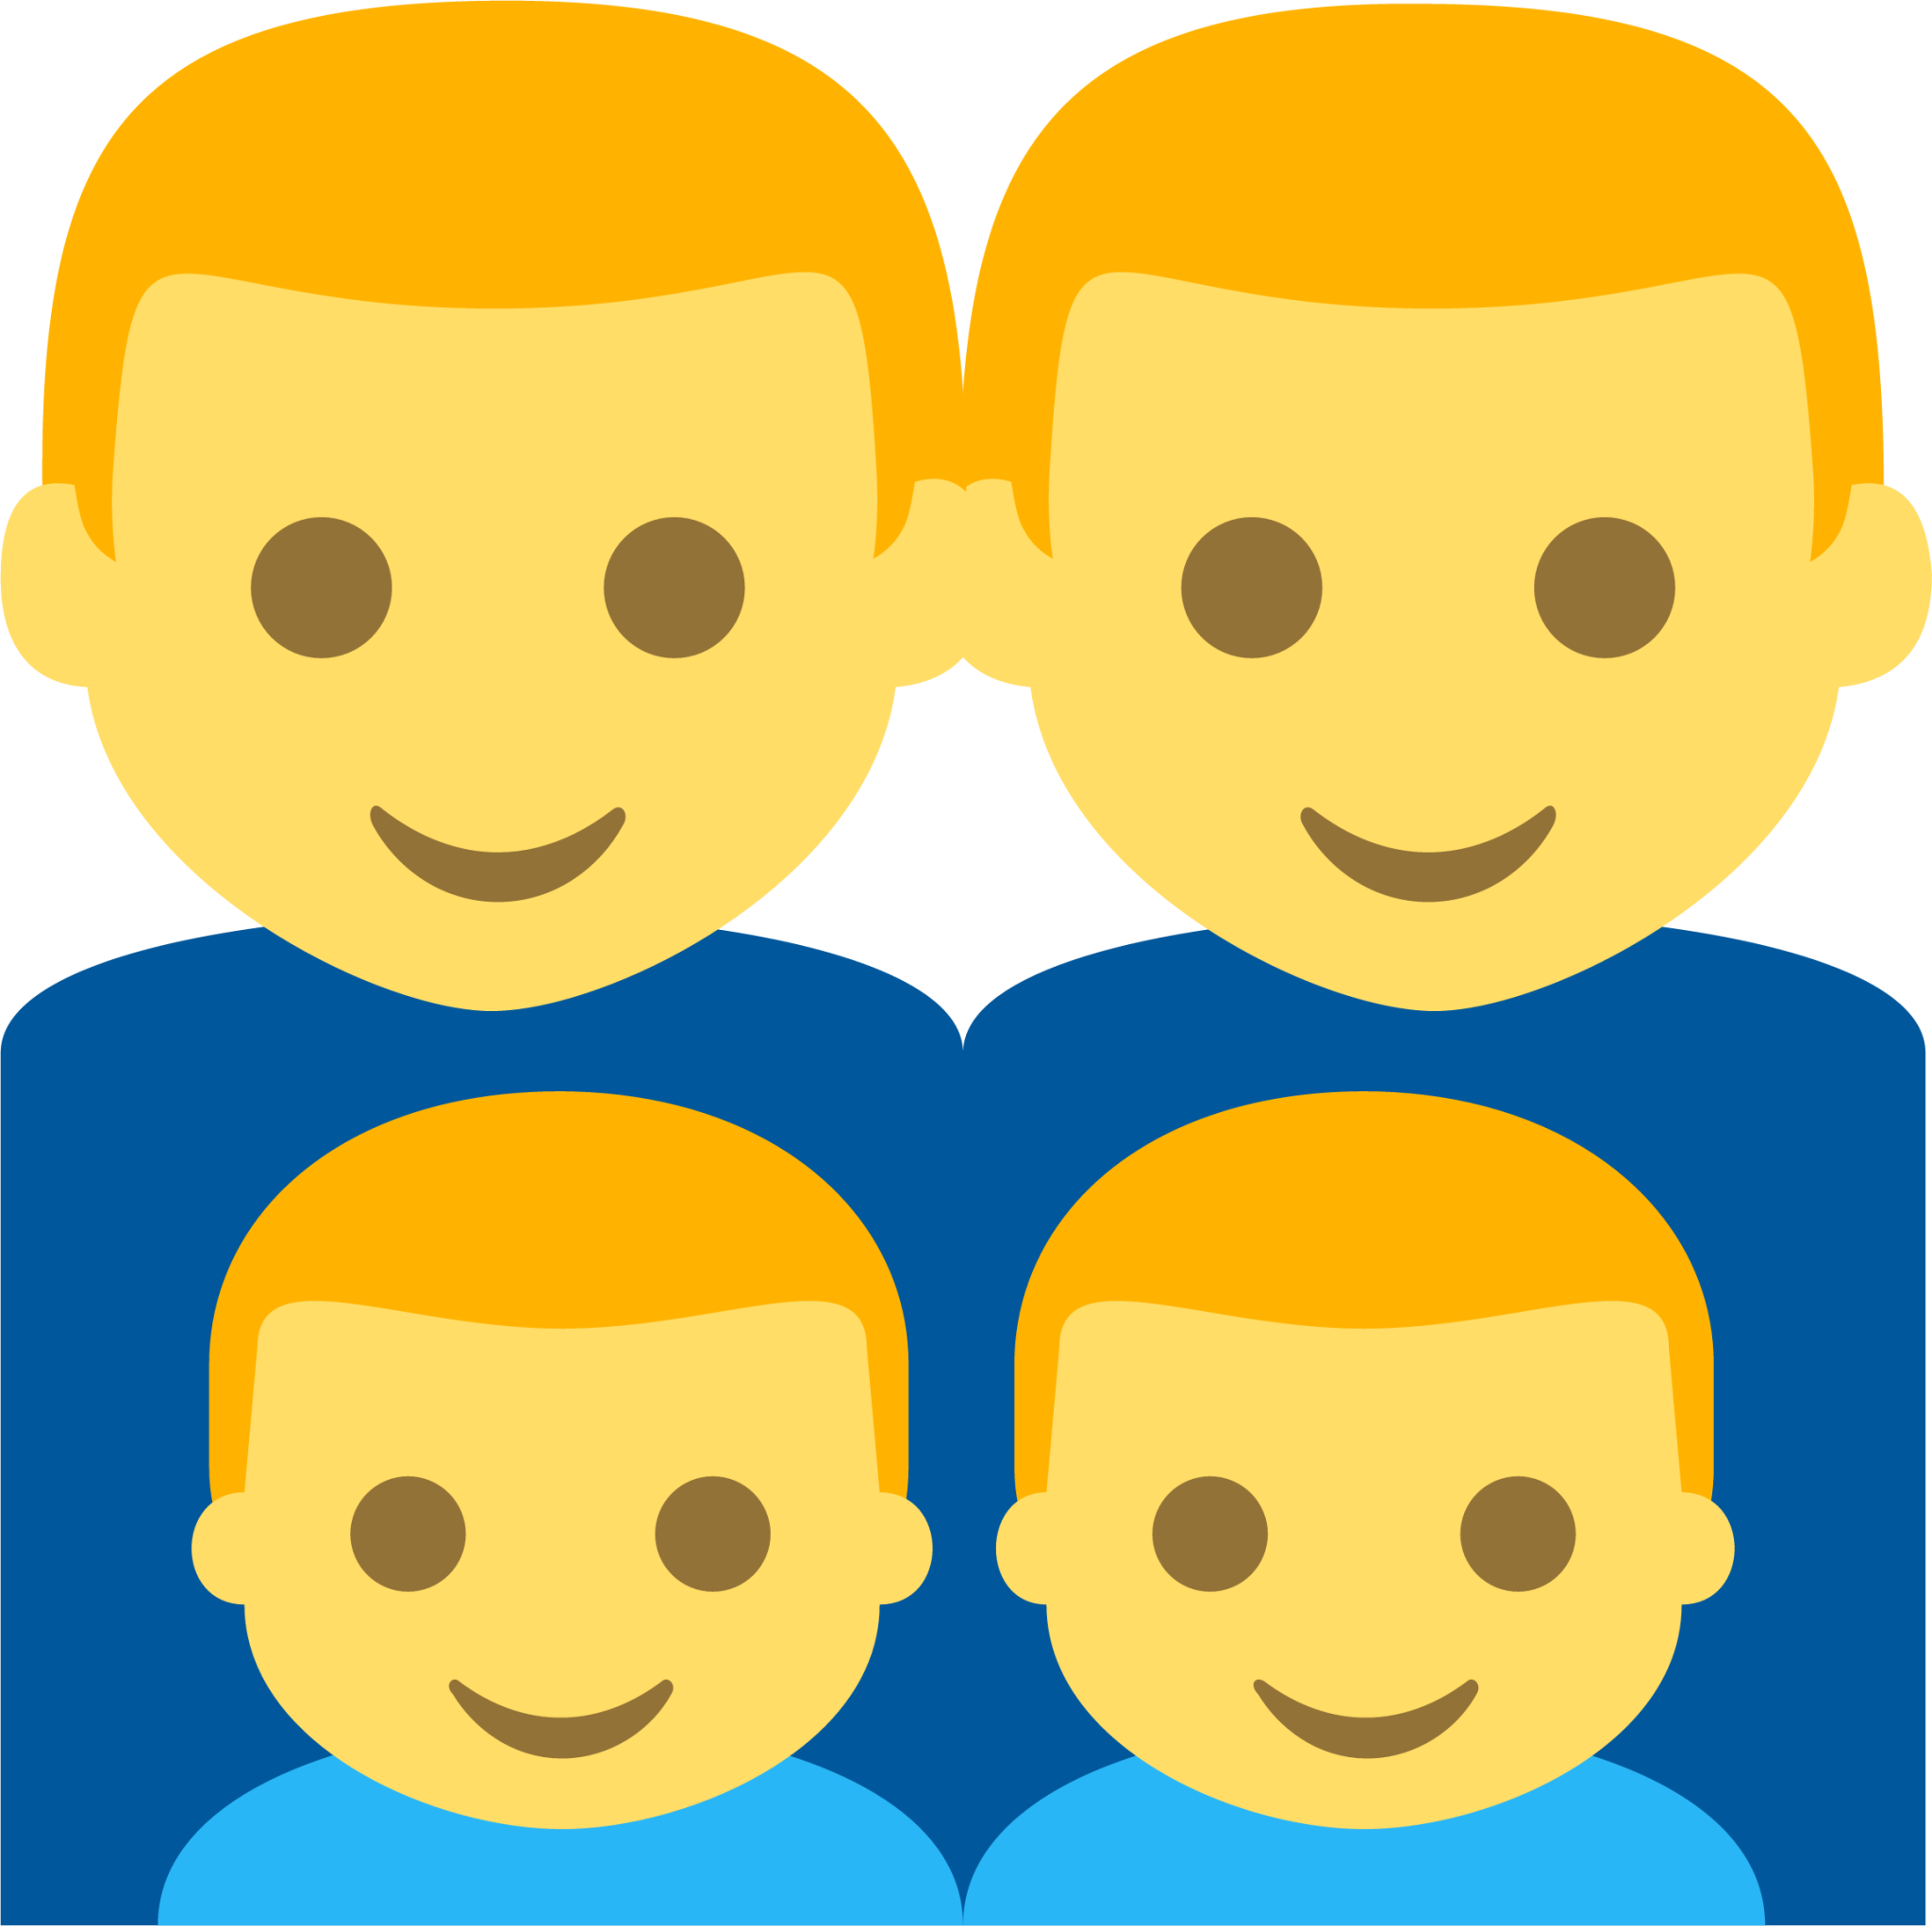 family (man,man,boy,boy) emoji